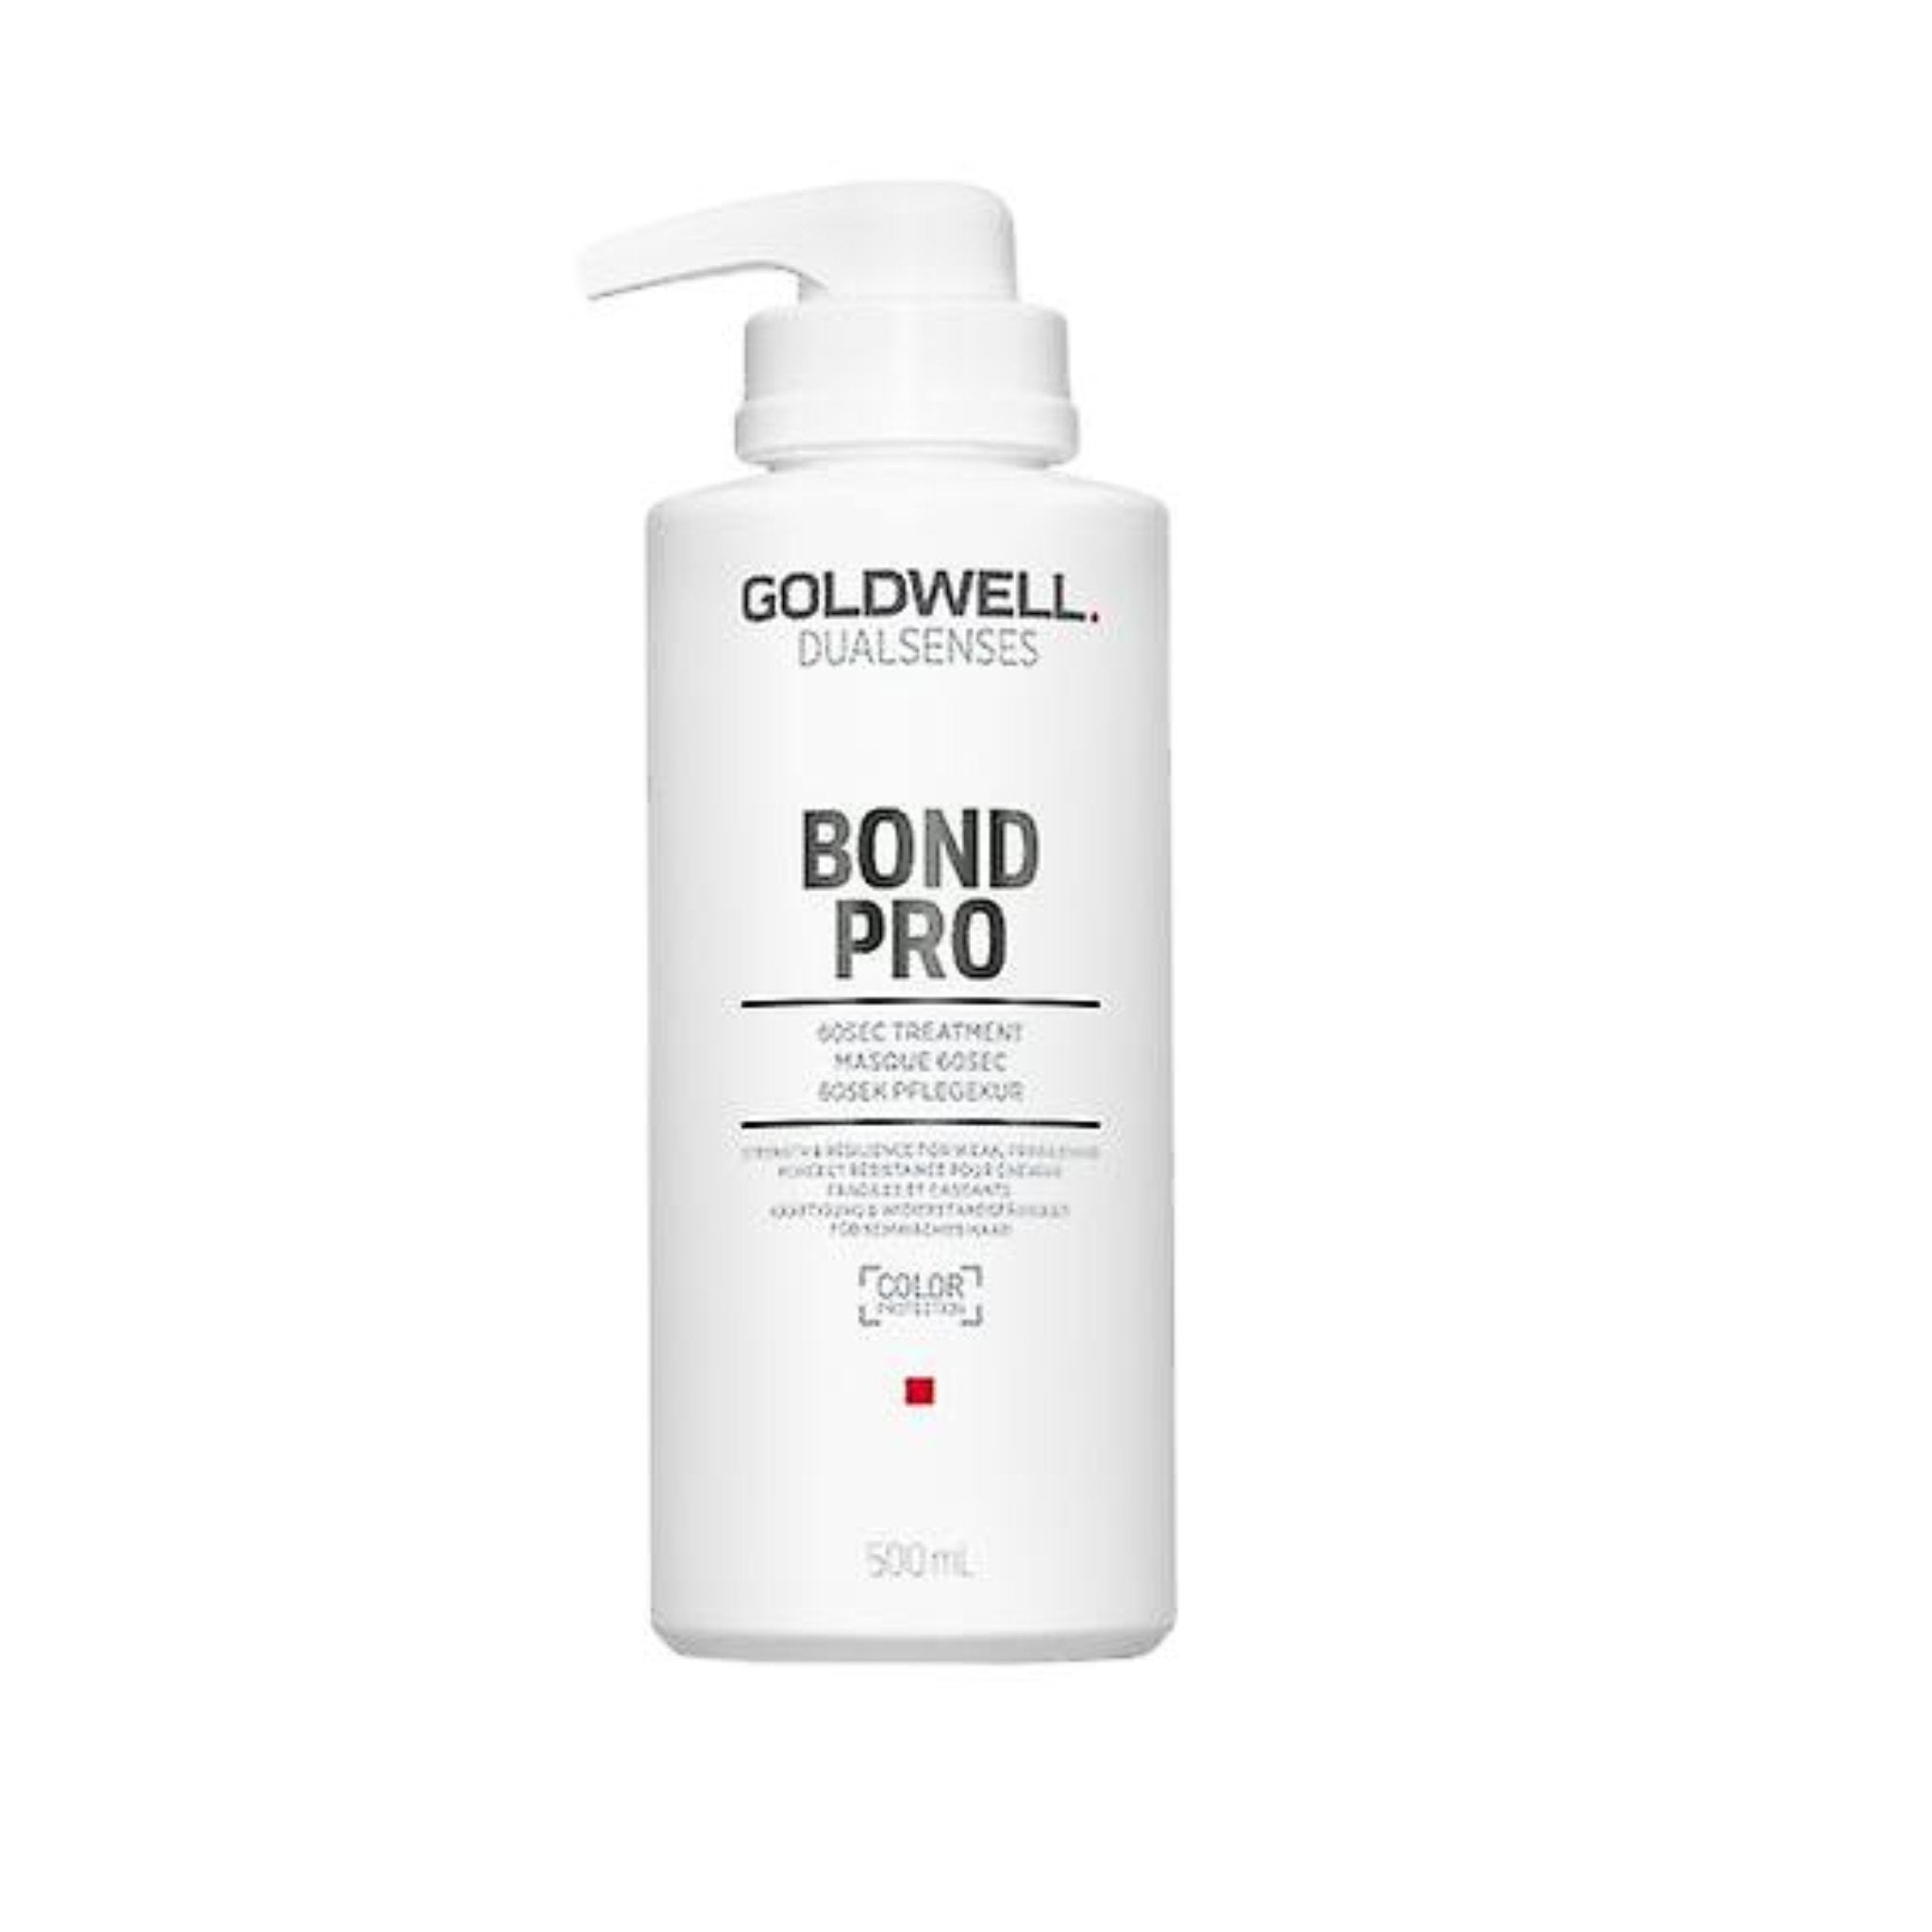 Goldwell. Dual Senses Traitement 60 secondes Bond Pro - 500 ml - Concept C. Shop